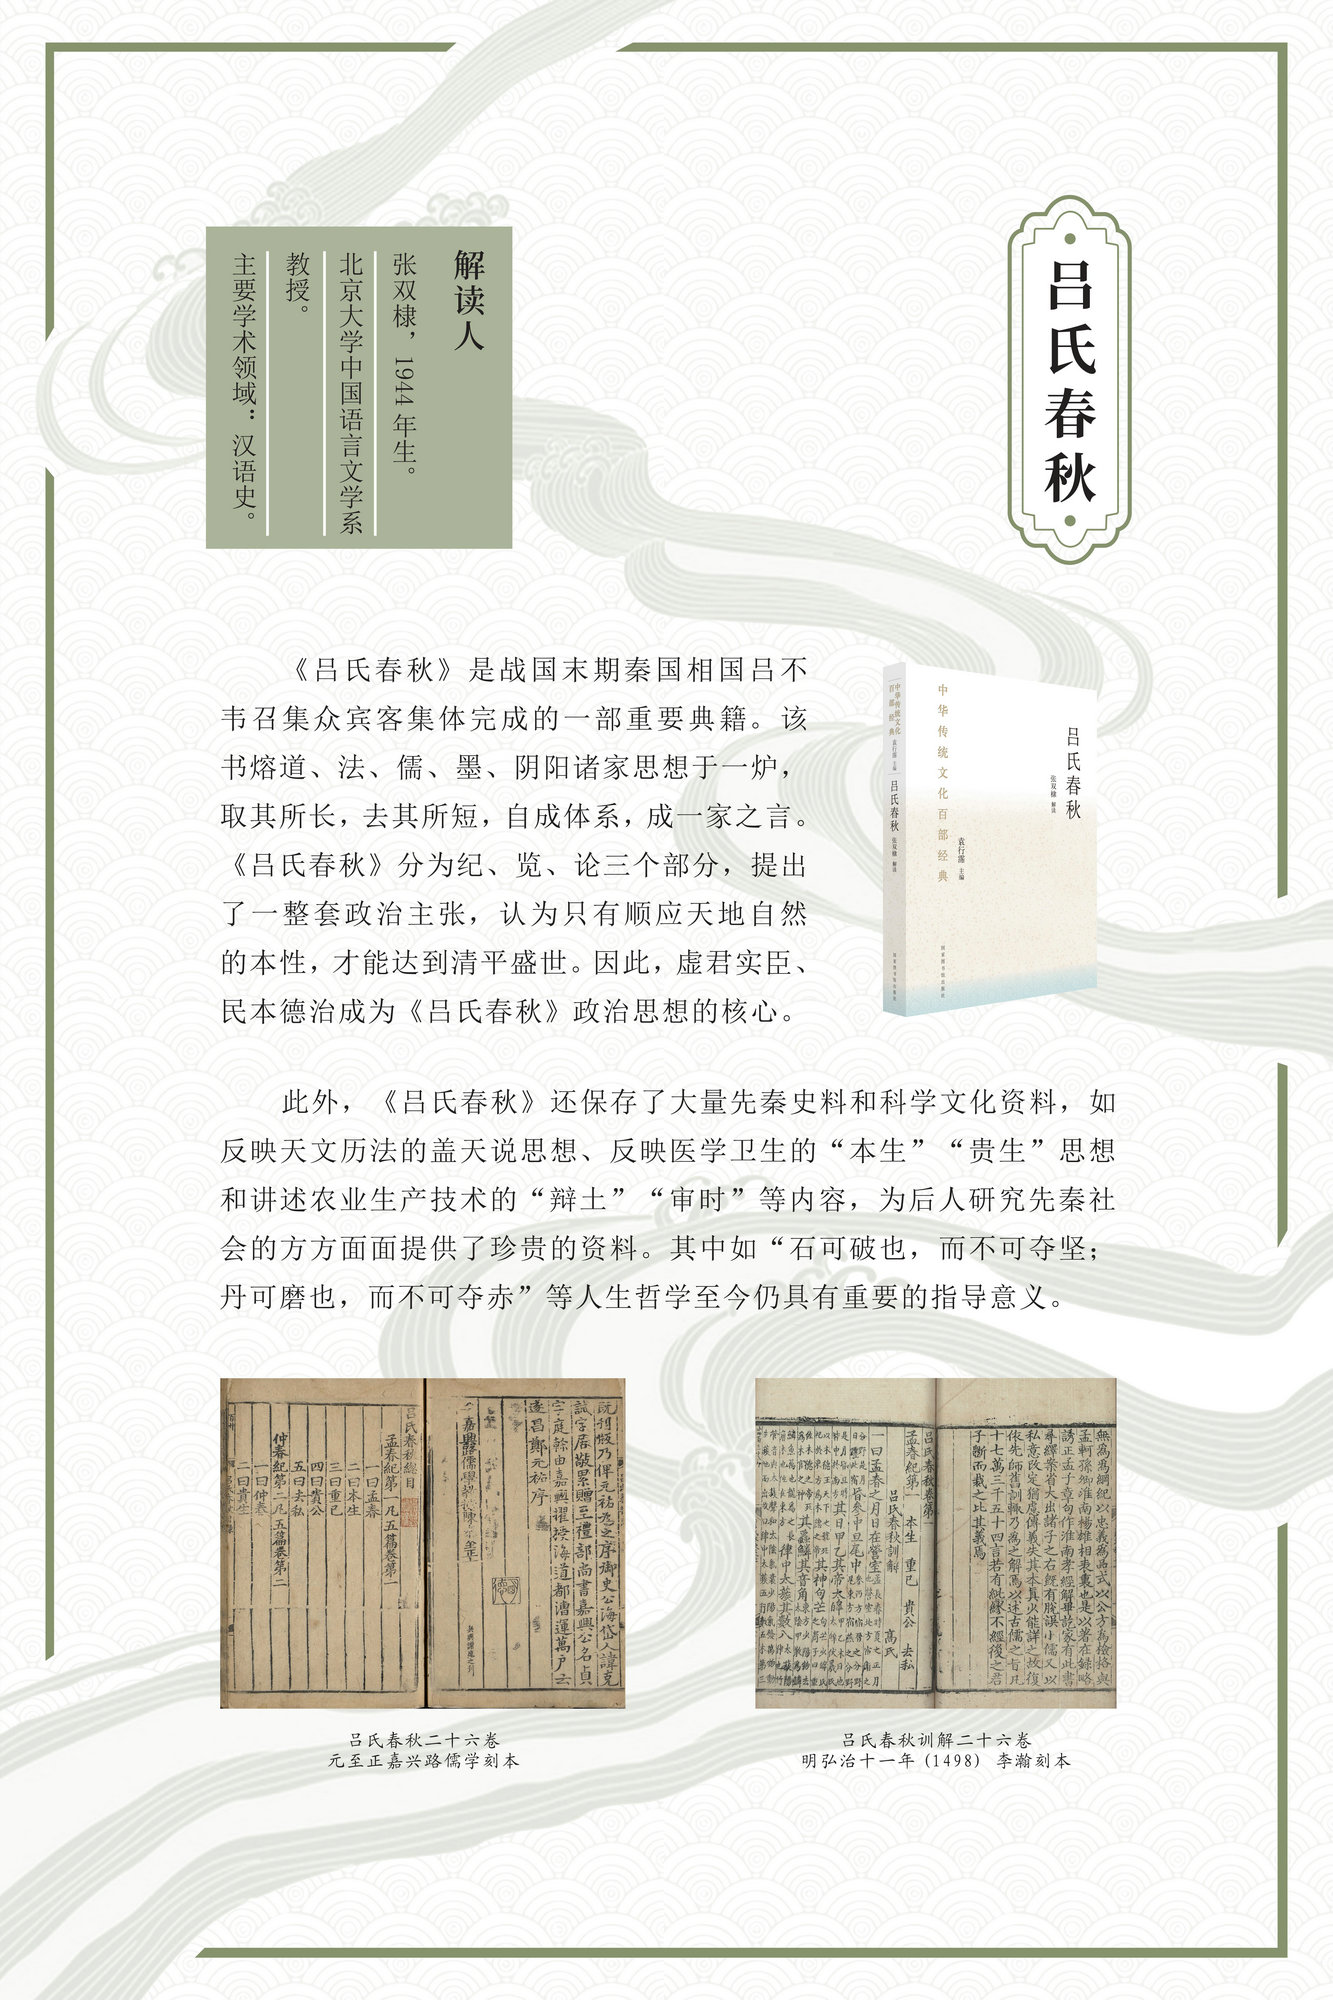 “激活经典 熔古铸今”——《中华传统文化百部经典》出版成果展_图8